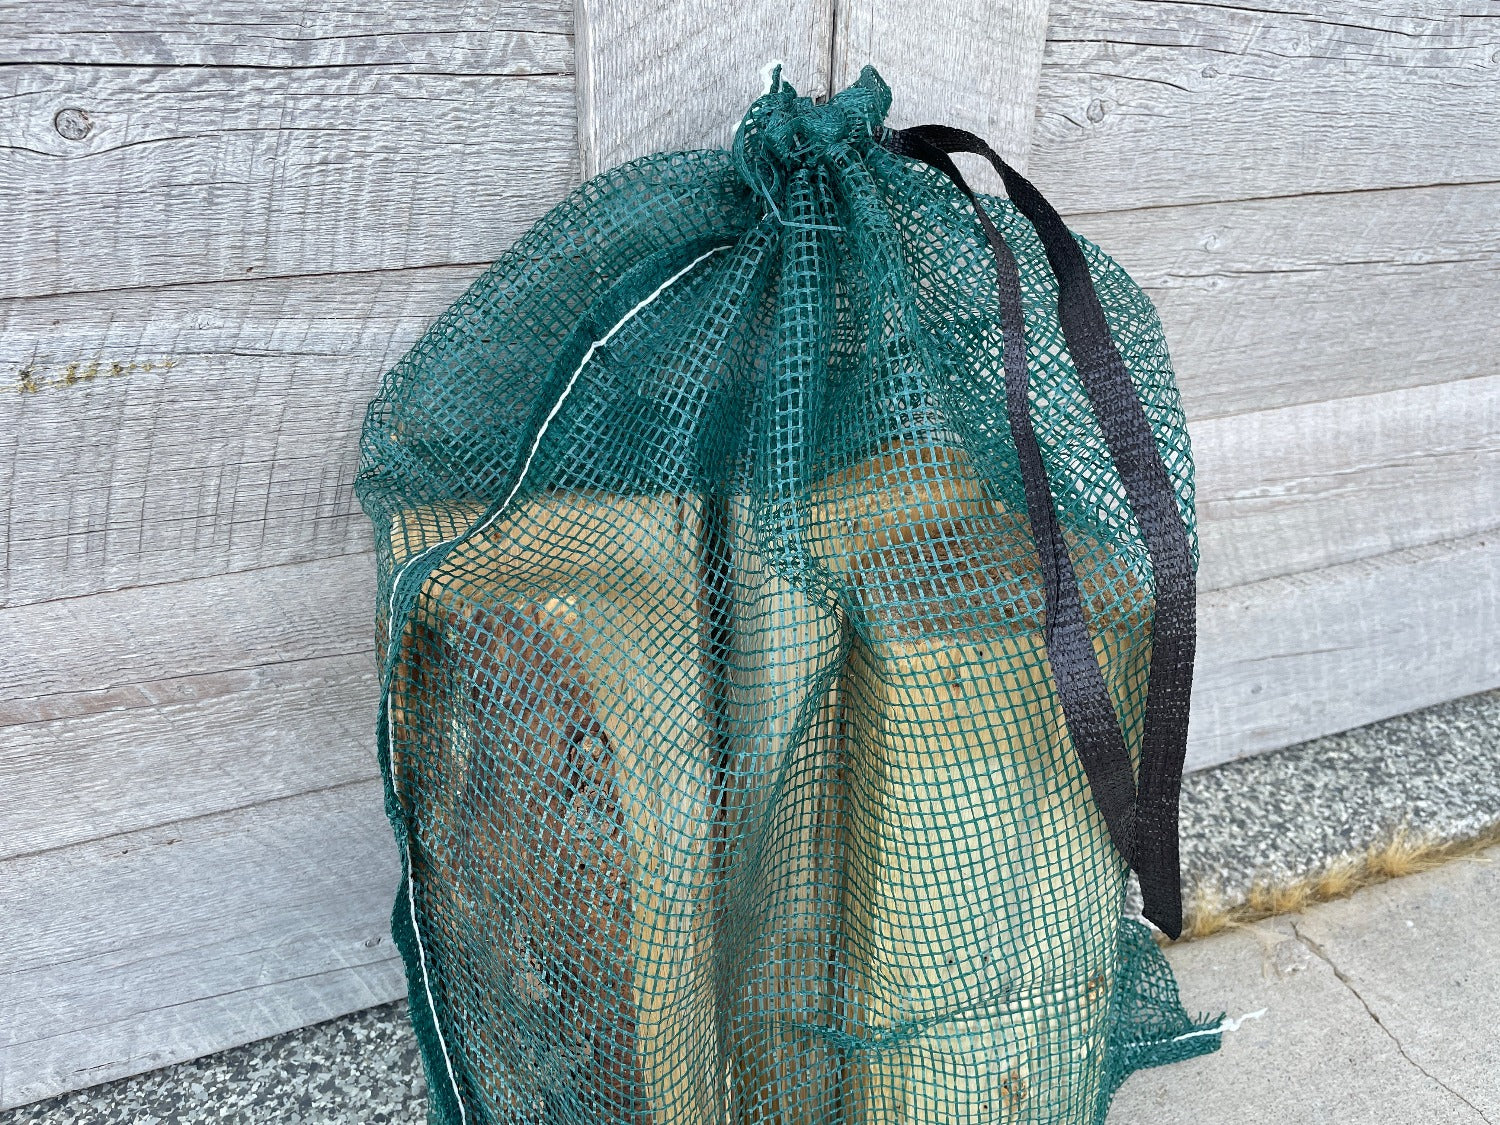 Custom Printed Mesh Produce Bags (50 lb.) - Reusable - Sandbaggy